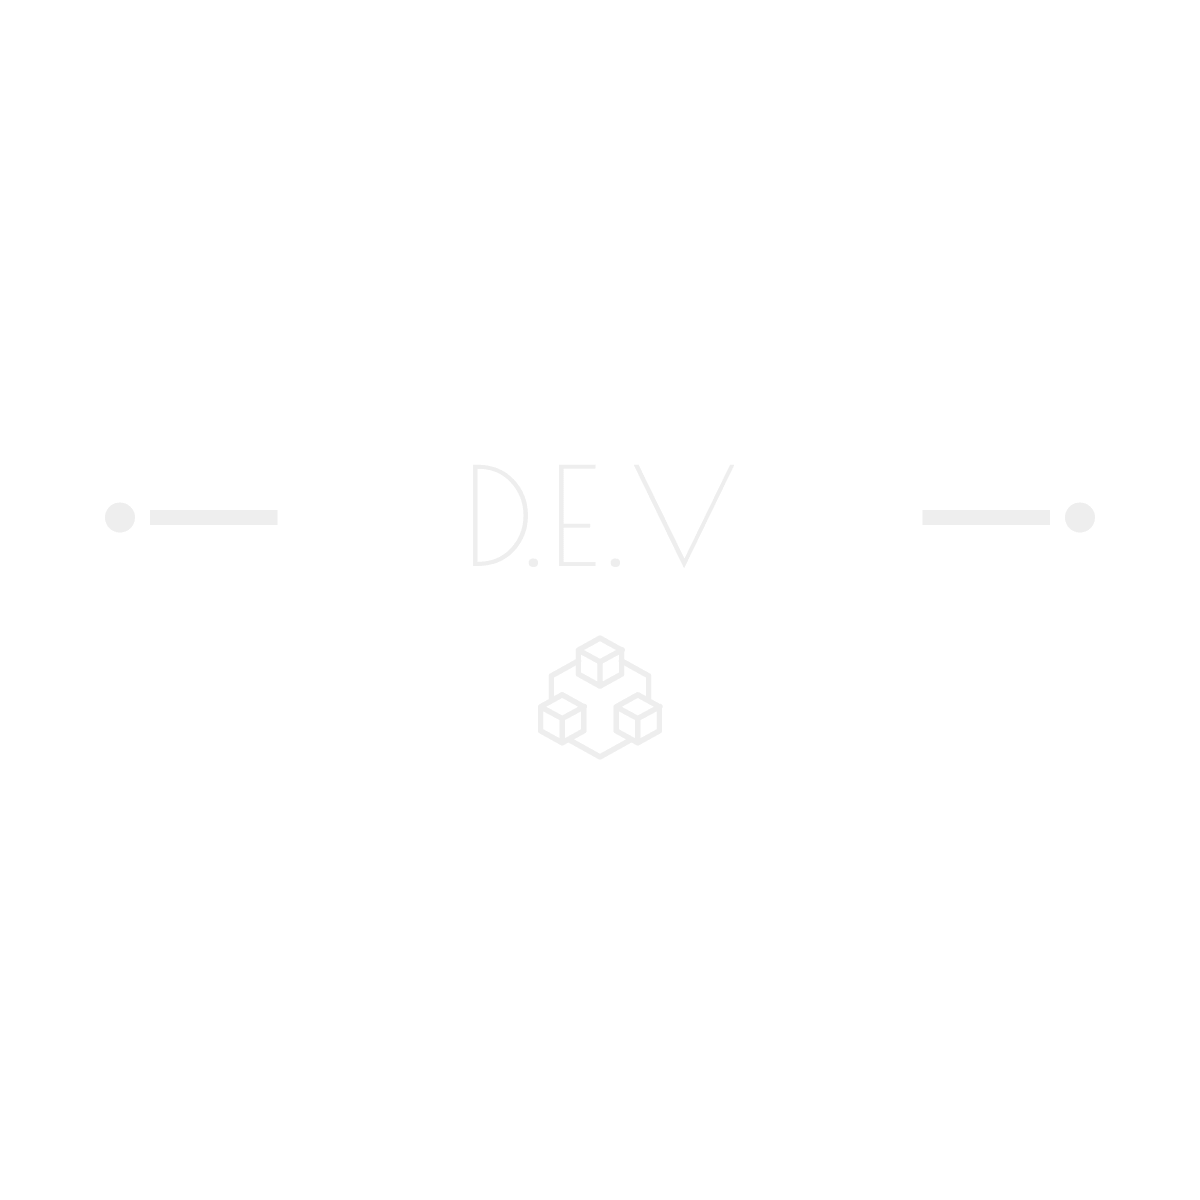 D.E.V logo